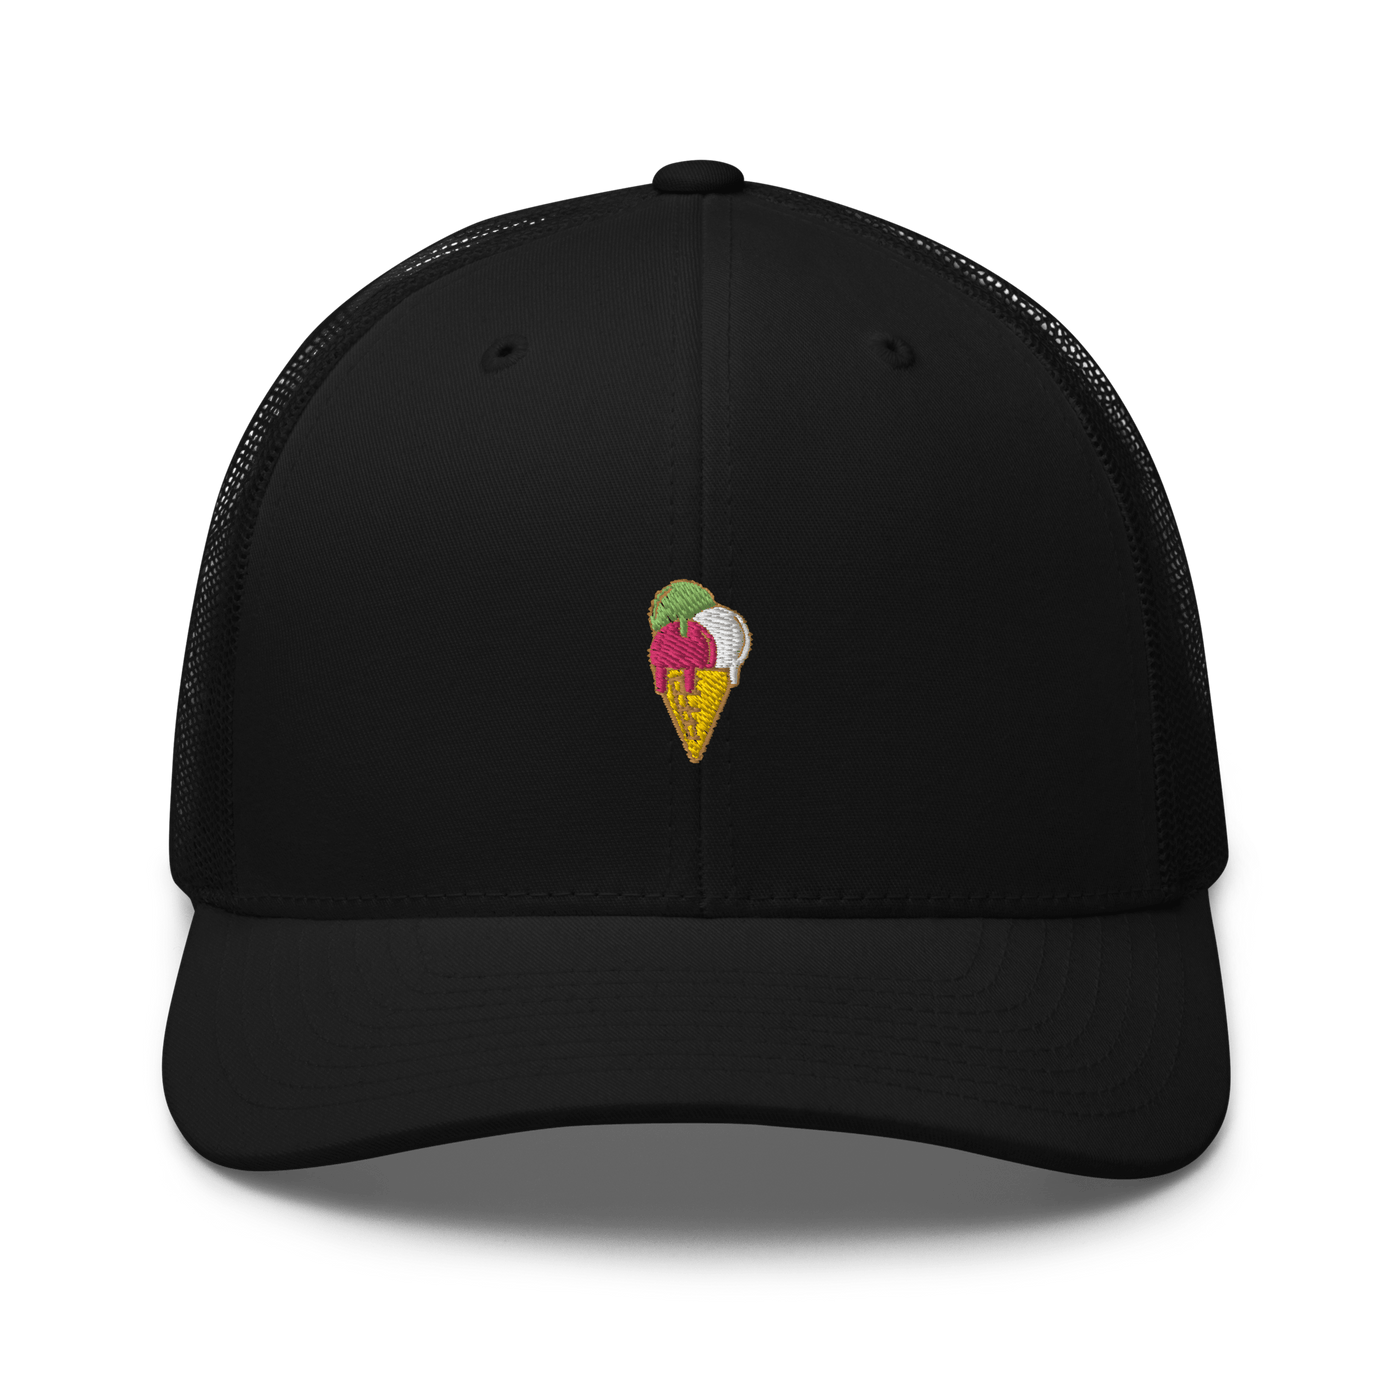 Ice Cream Cone Trucker Cap - Black - - Just Another Cap Store